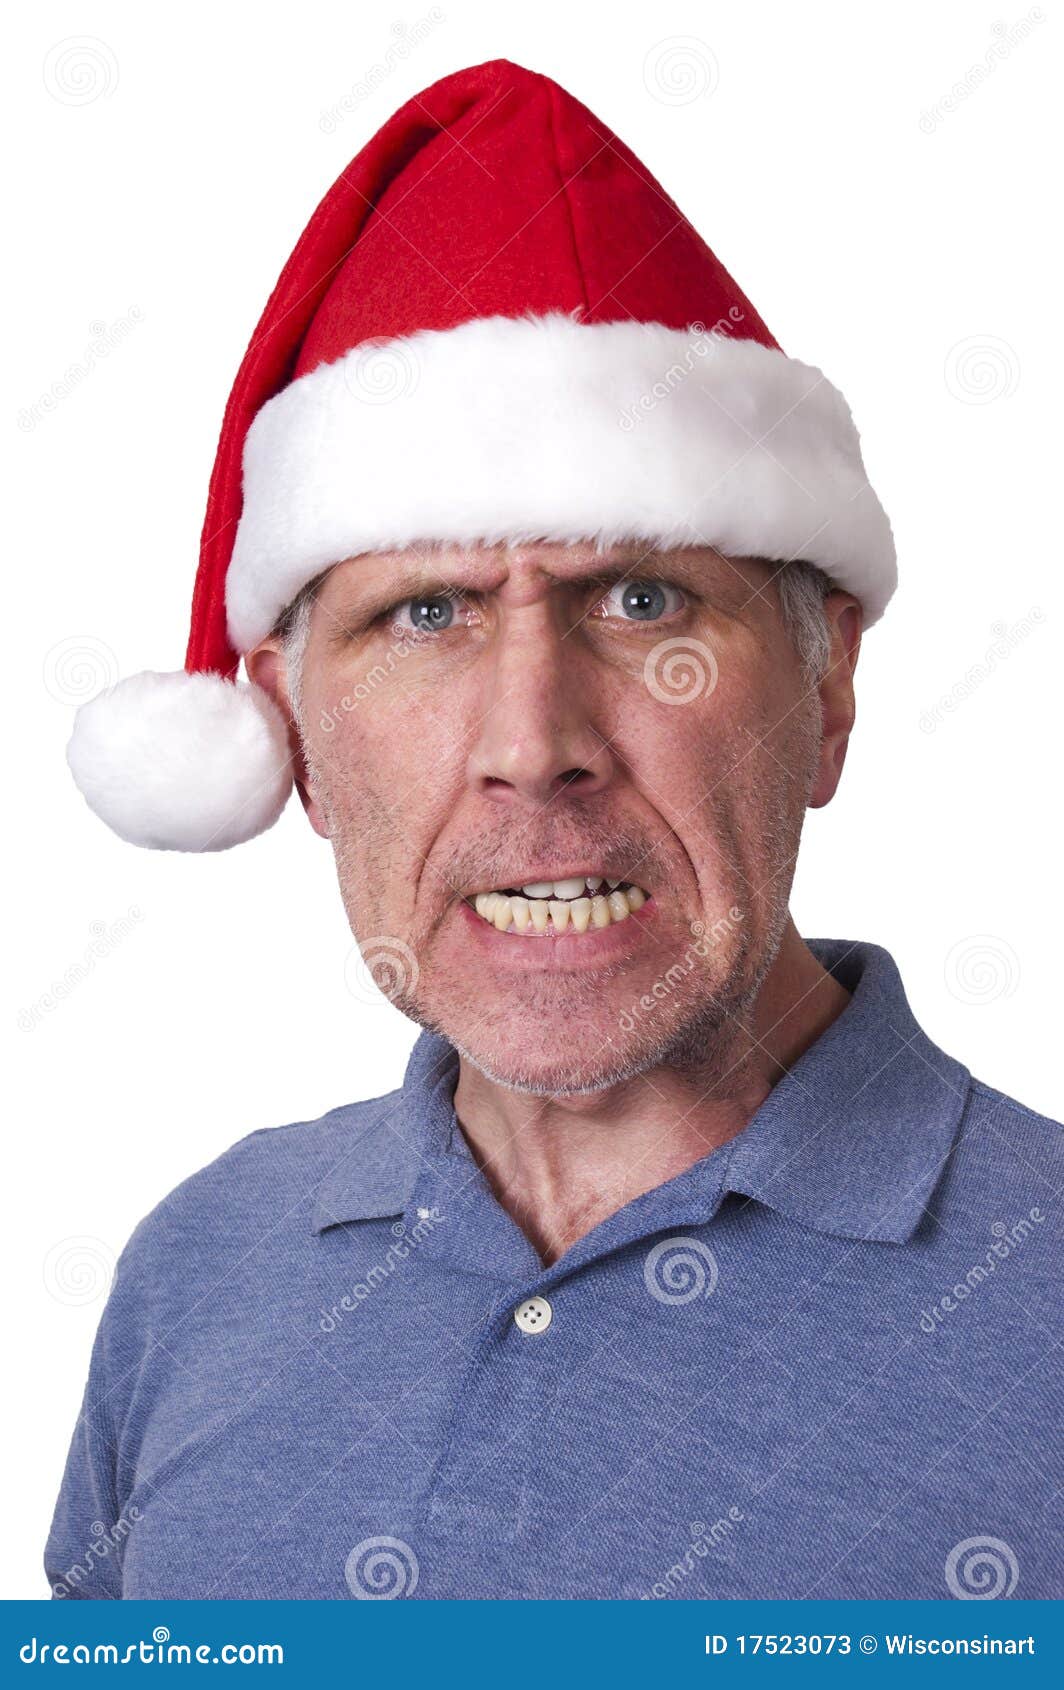 bah humbug mean man santa claus hat christmas xmas